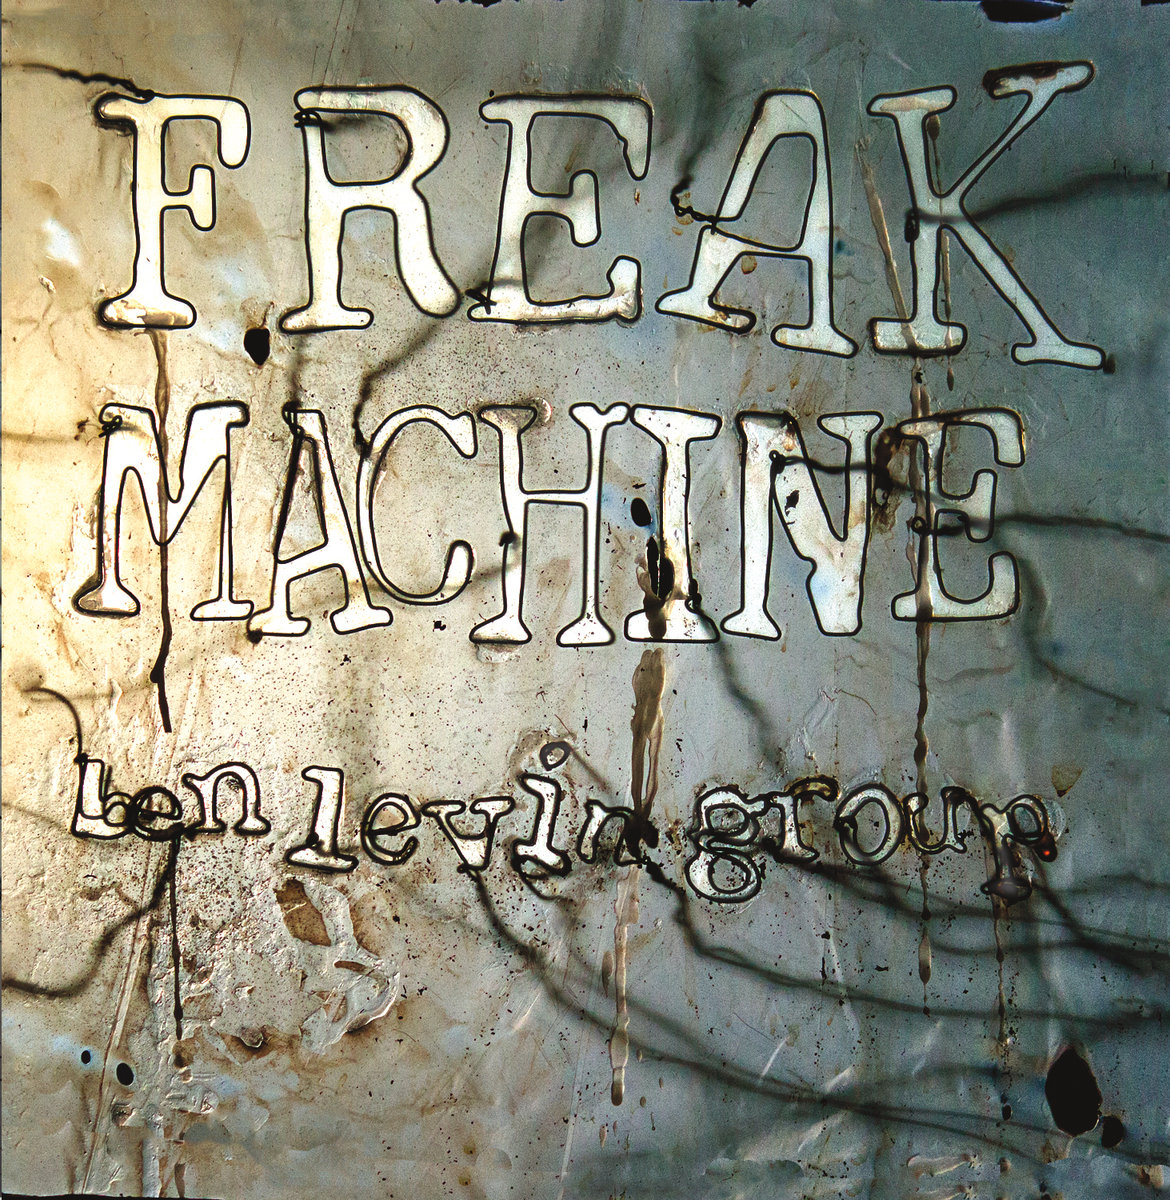 Freak Machine by Ben Levin Group